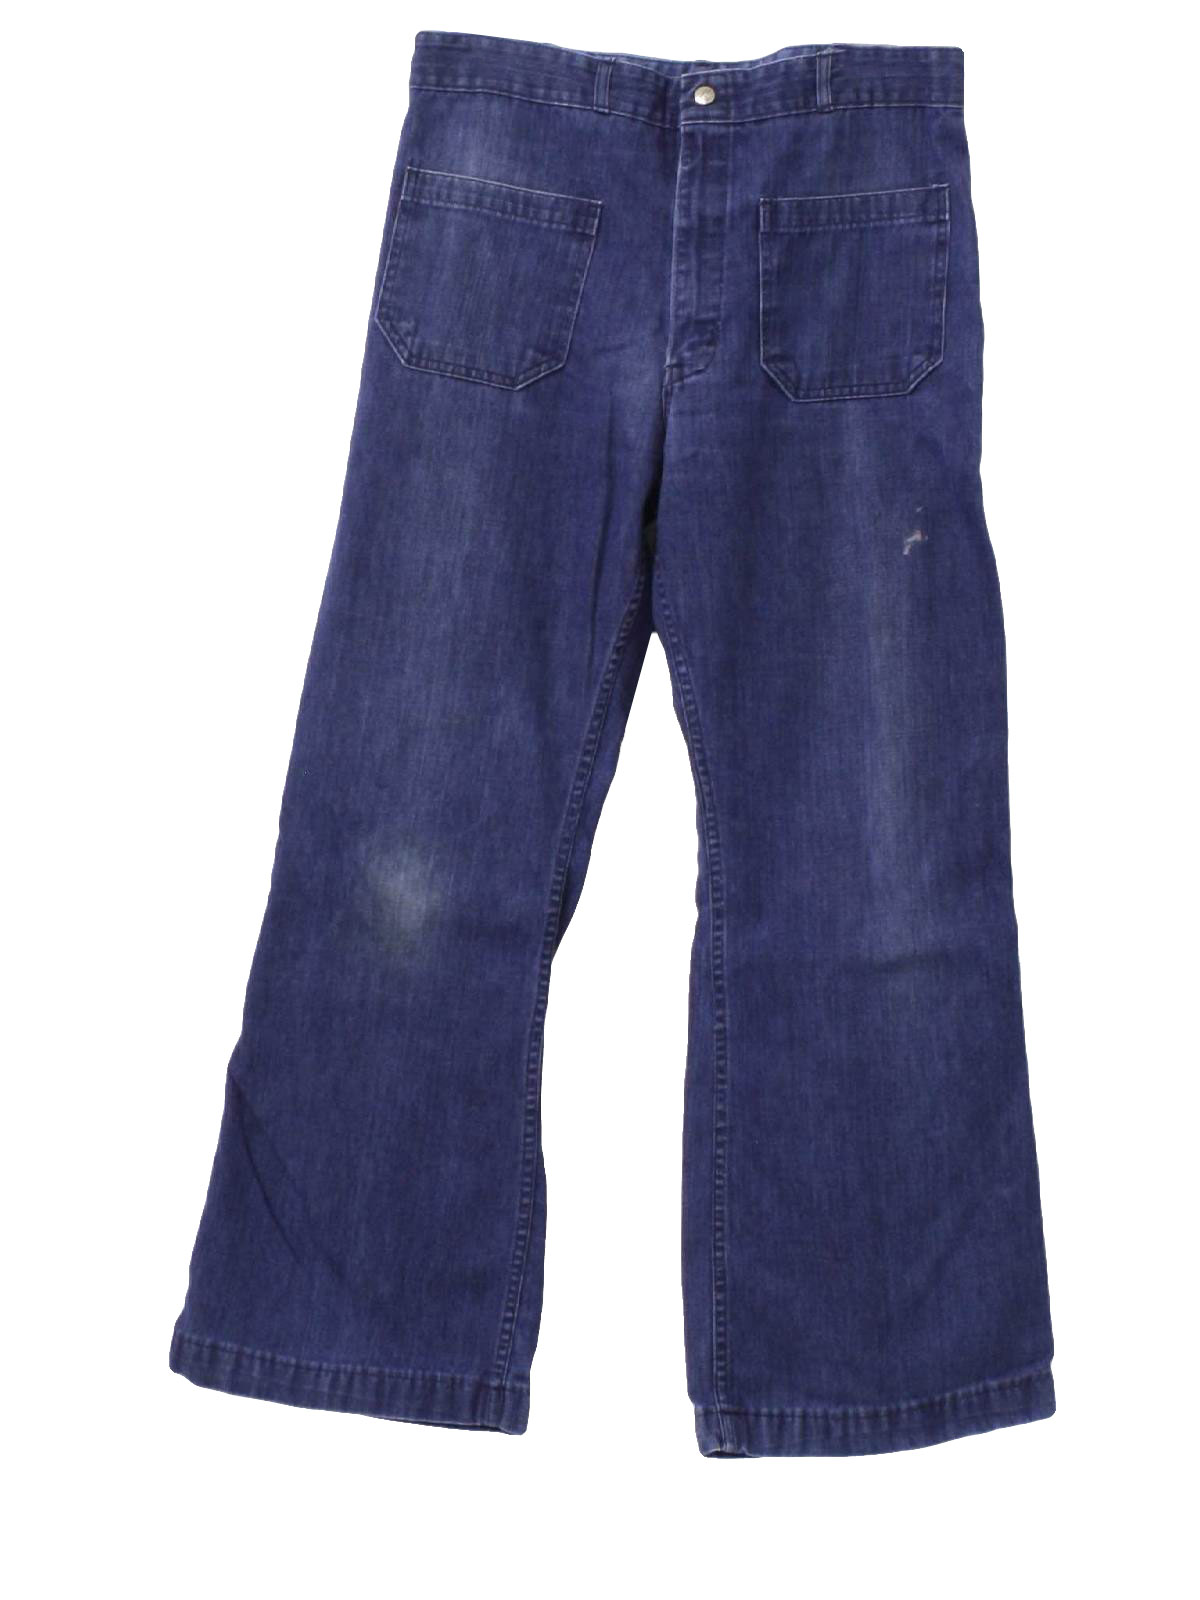 Seafarer 70's Vintage Bellbottom Pants: 70s -Seafarer- Mens blue cotton ...